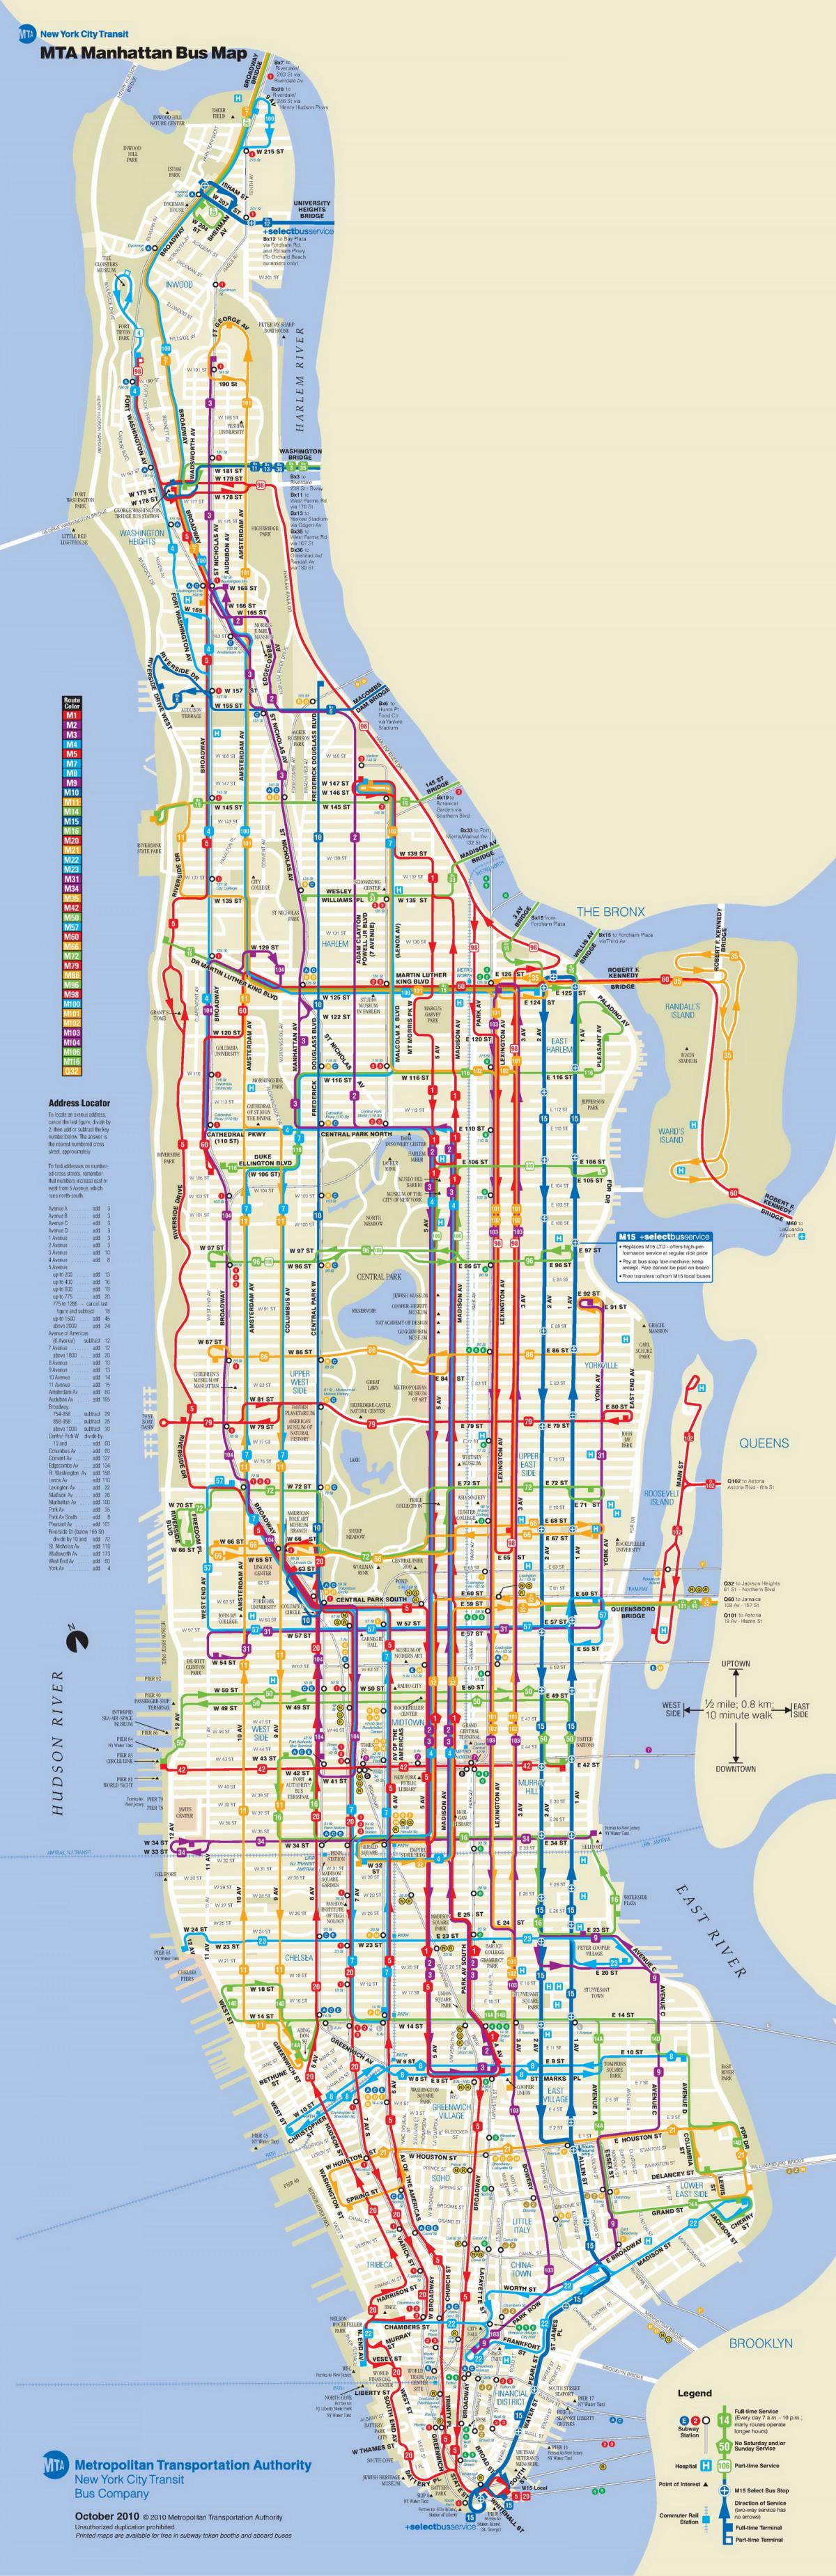 მანჰეტენის ავტობუსი რუკა გაჩერება